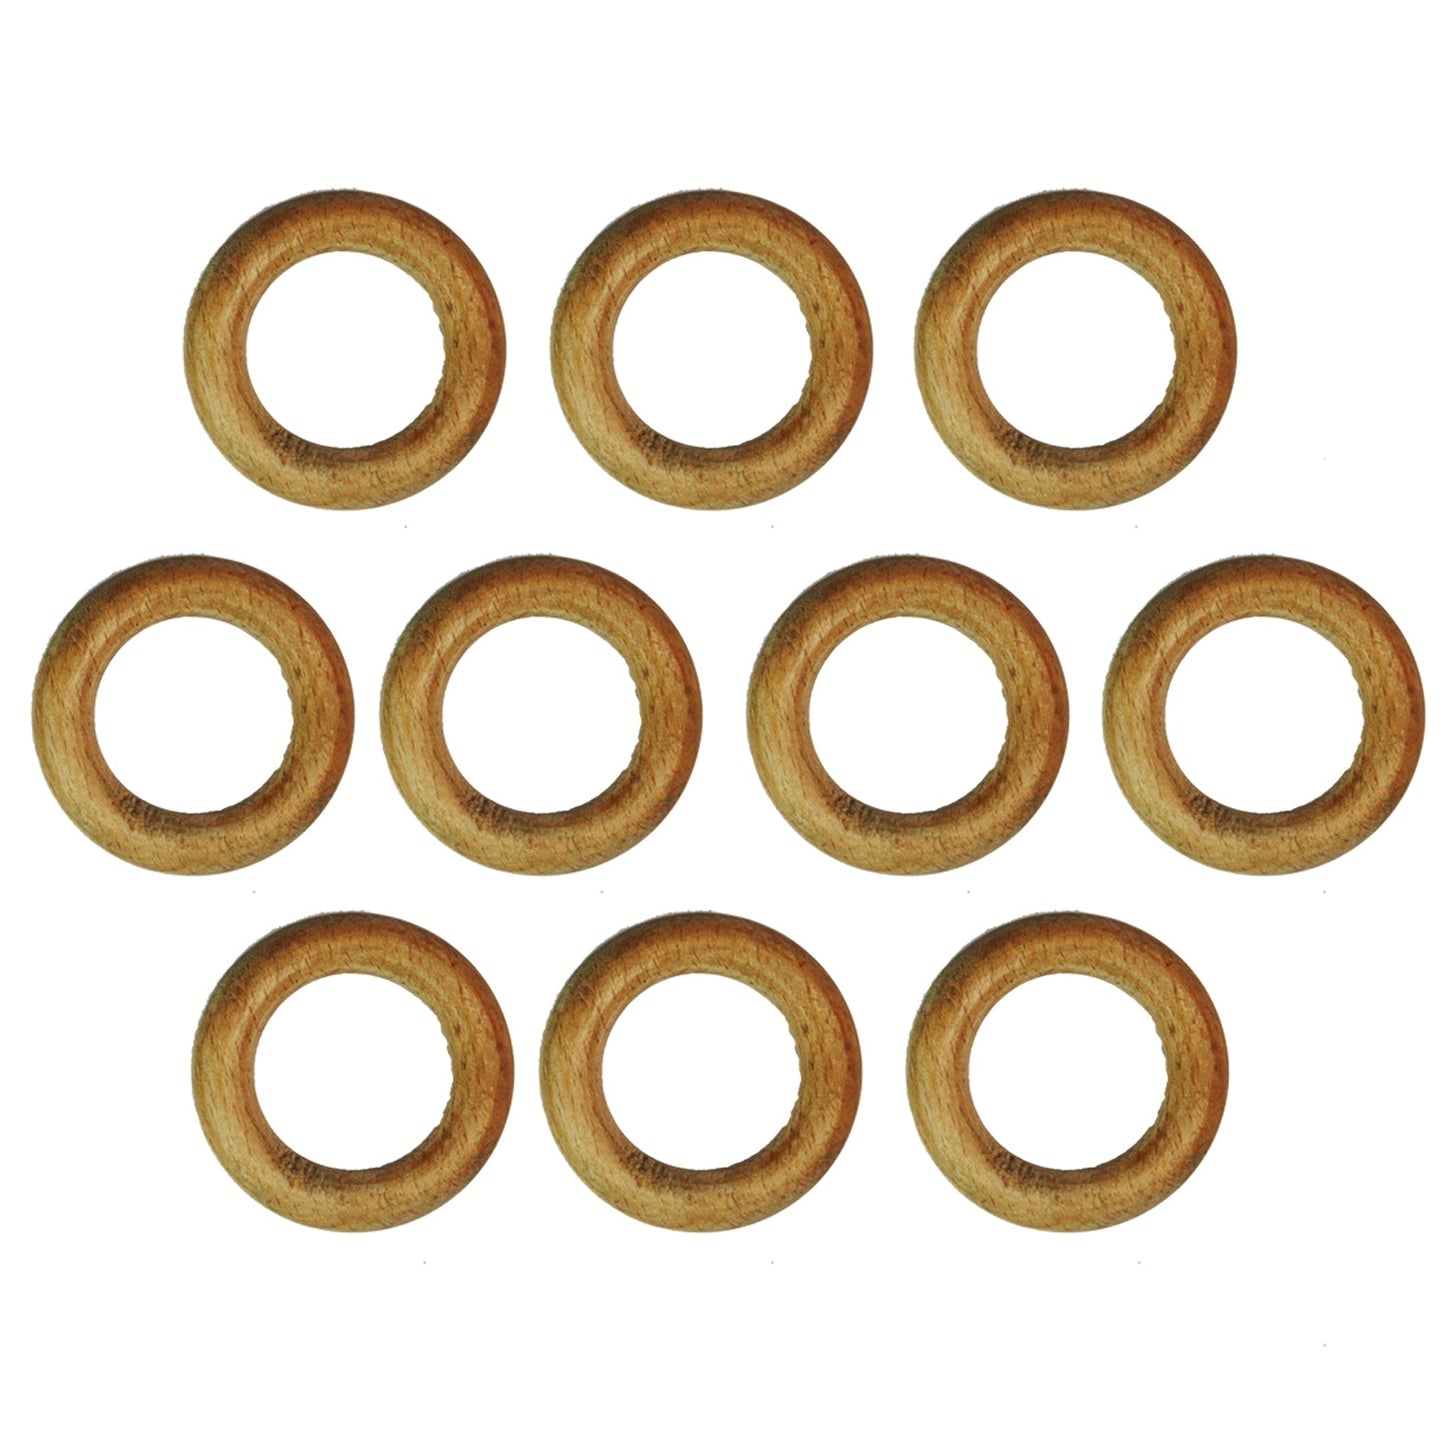 Buy Lakdi Baaz | Wooden Rings 50 MM Pack of 10